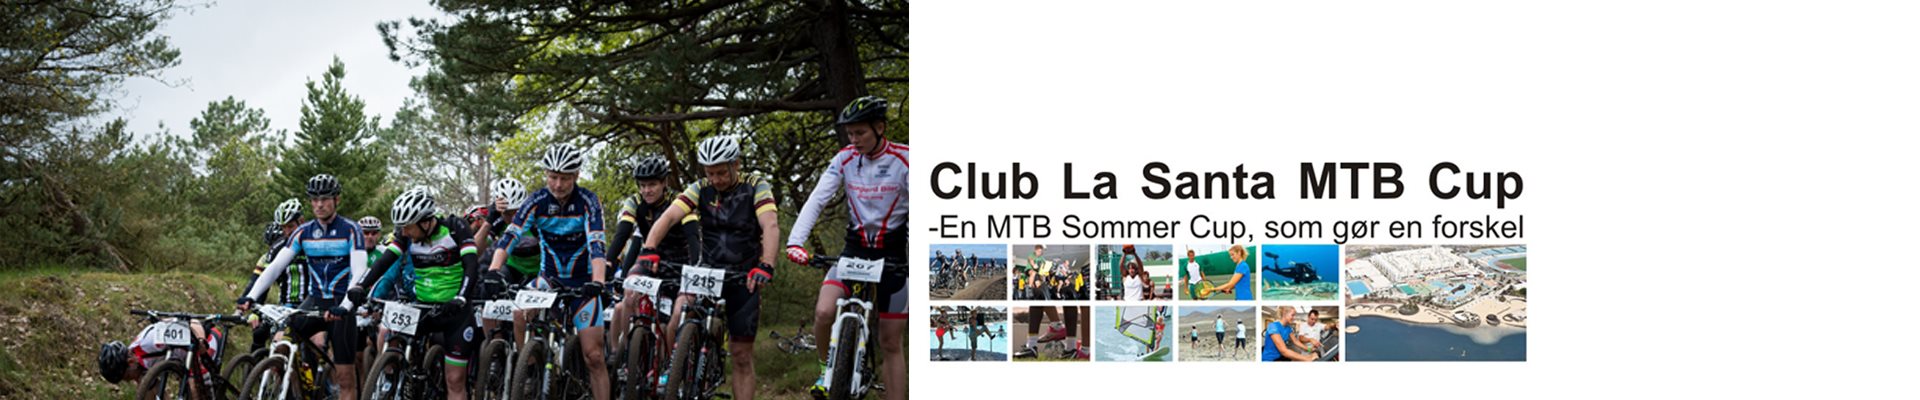 CLUB LA SANTA MTB CUP '22- Samlet CUP